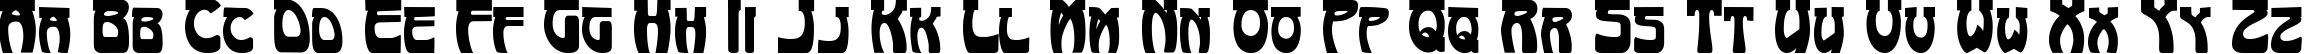 Пример написания английского алфавита шрифтом Art-Nouveau 1895